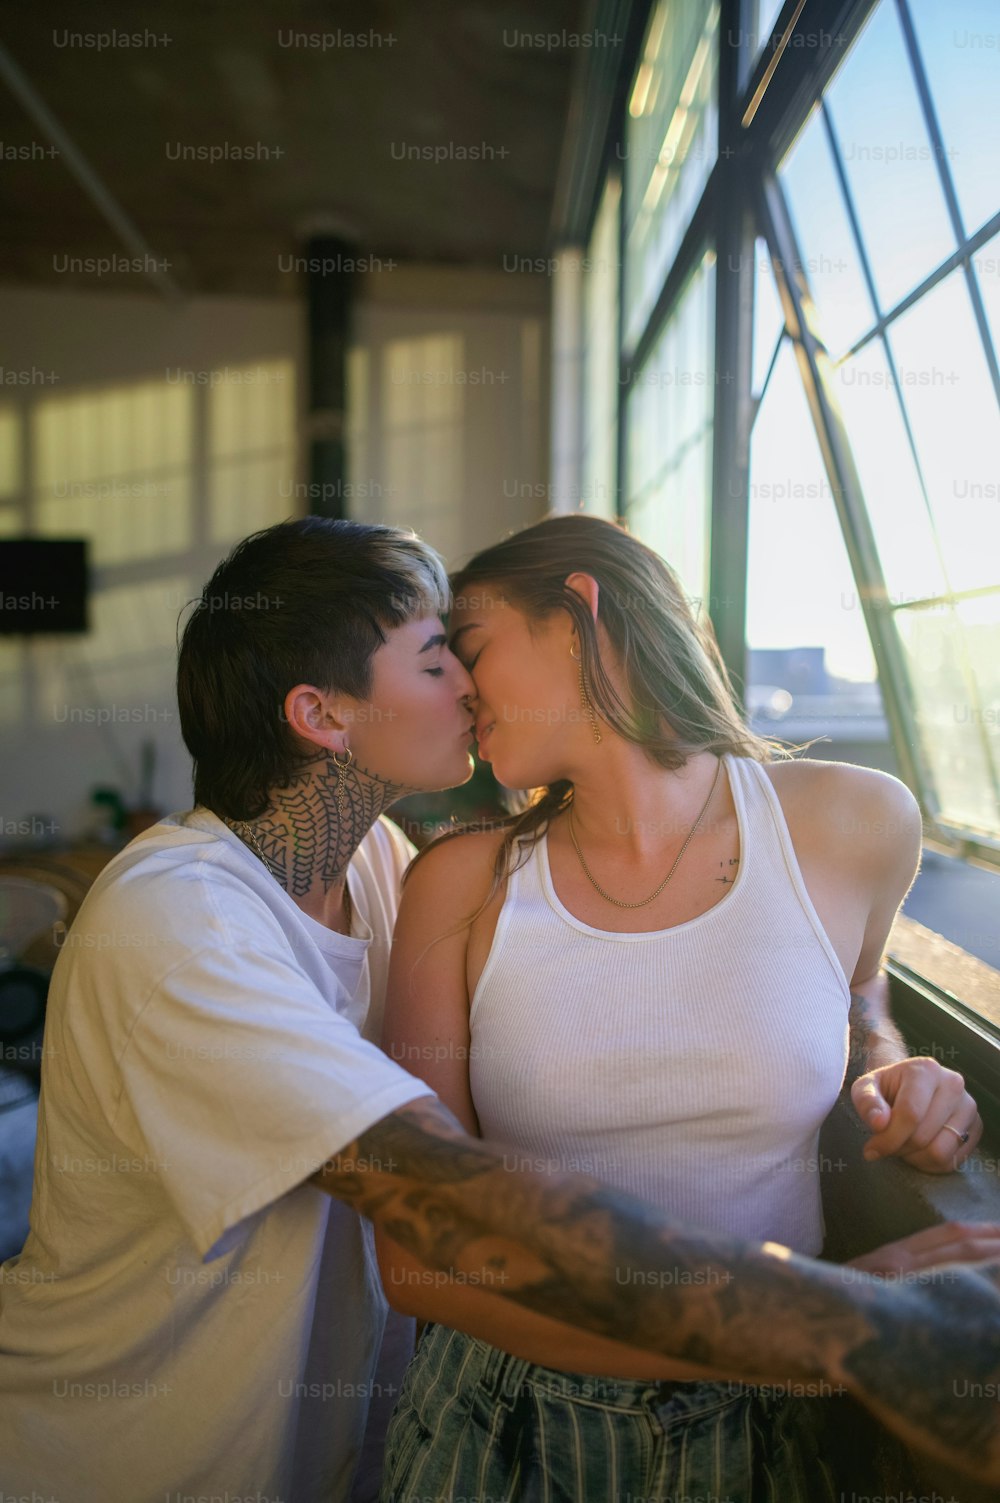 창문 앞에서 서로 키스하는 남자와 여자